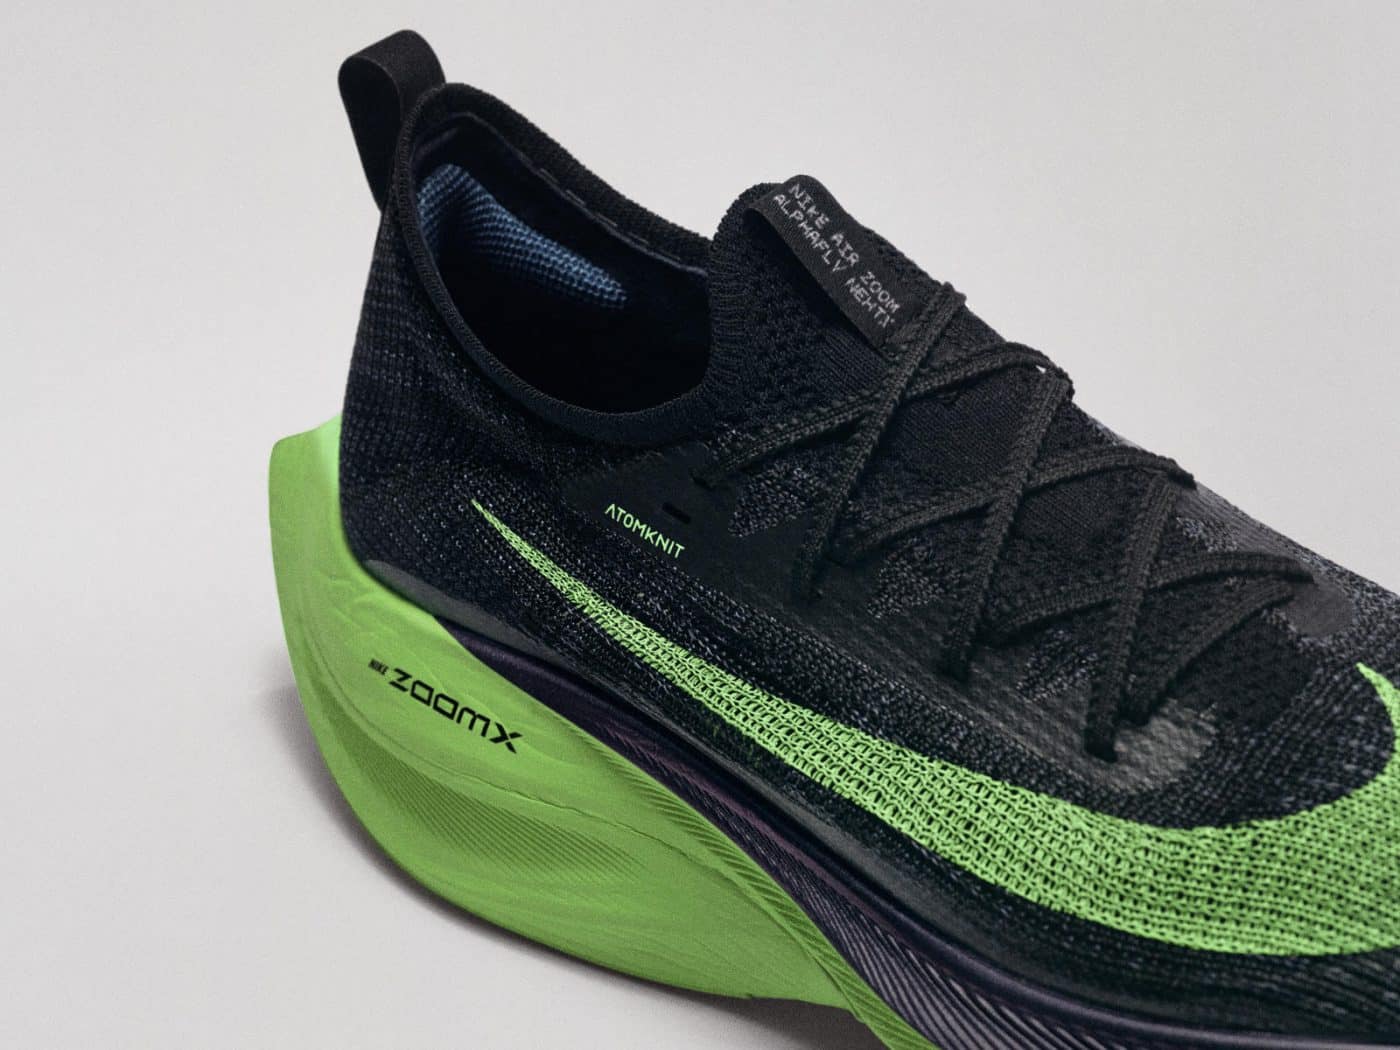 Nike dévoile ses chaussures performantes pour les JO 2020